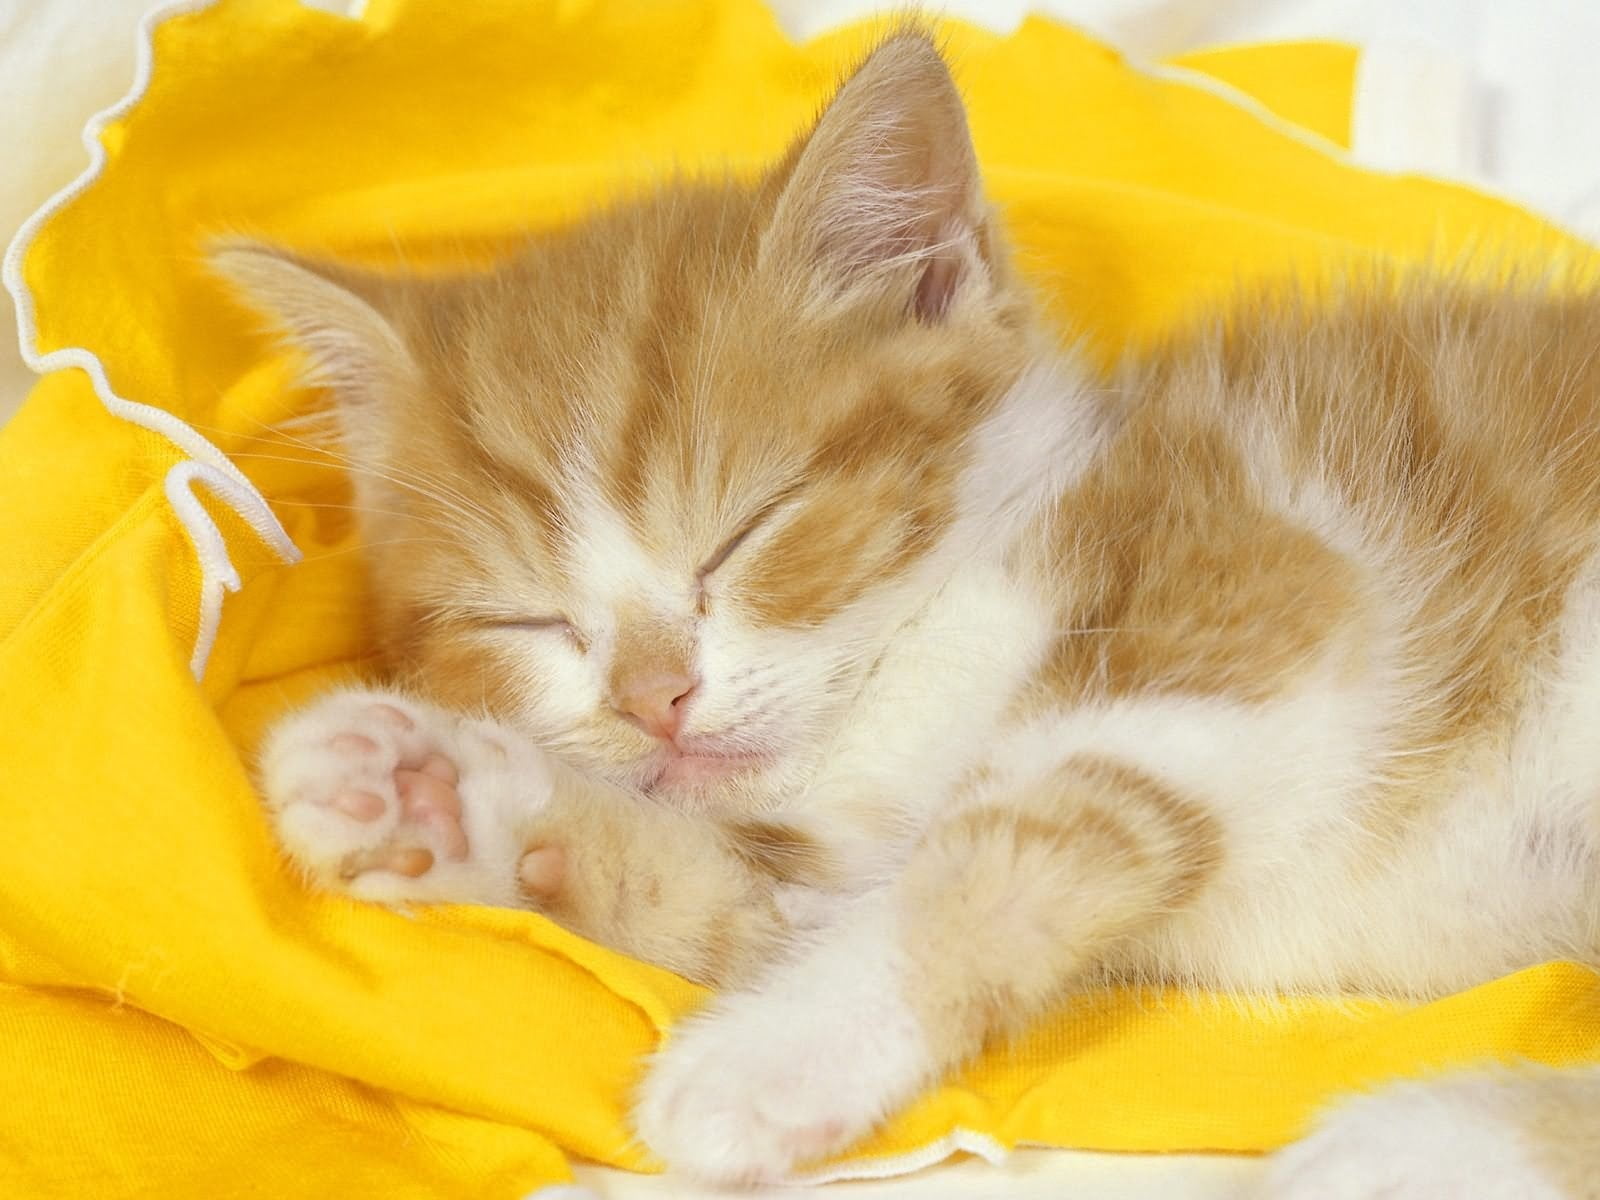 orange and white tabby cat, kitten, baby, sleep, cloth, domestic Cat